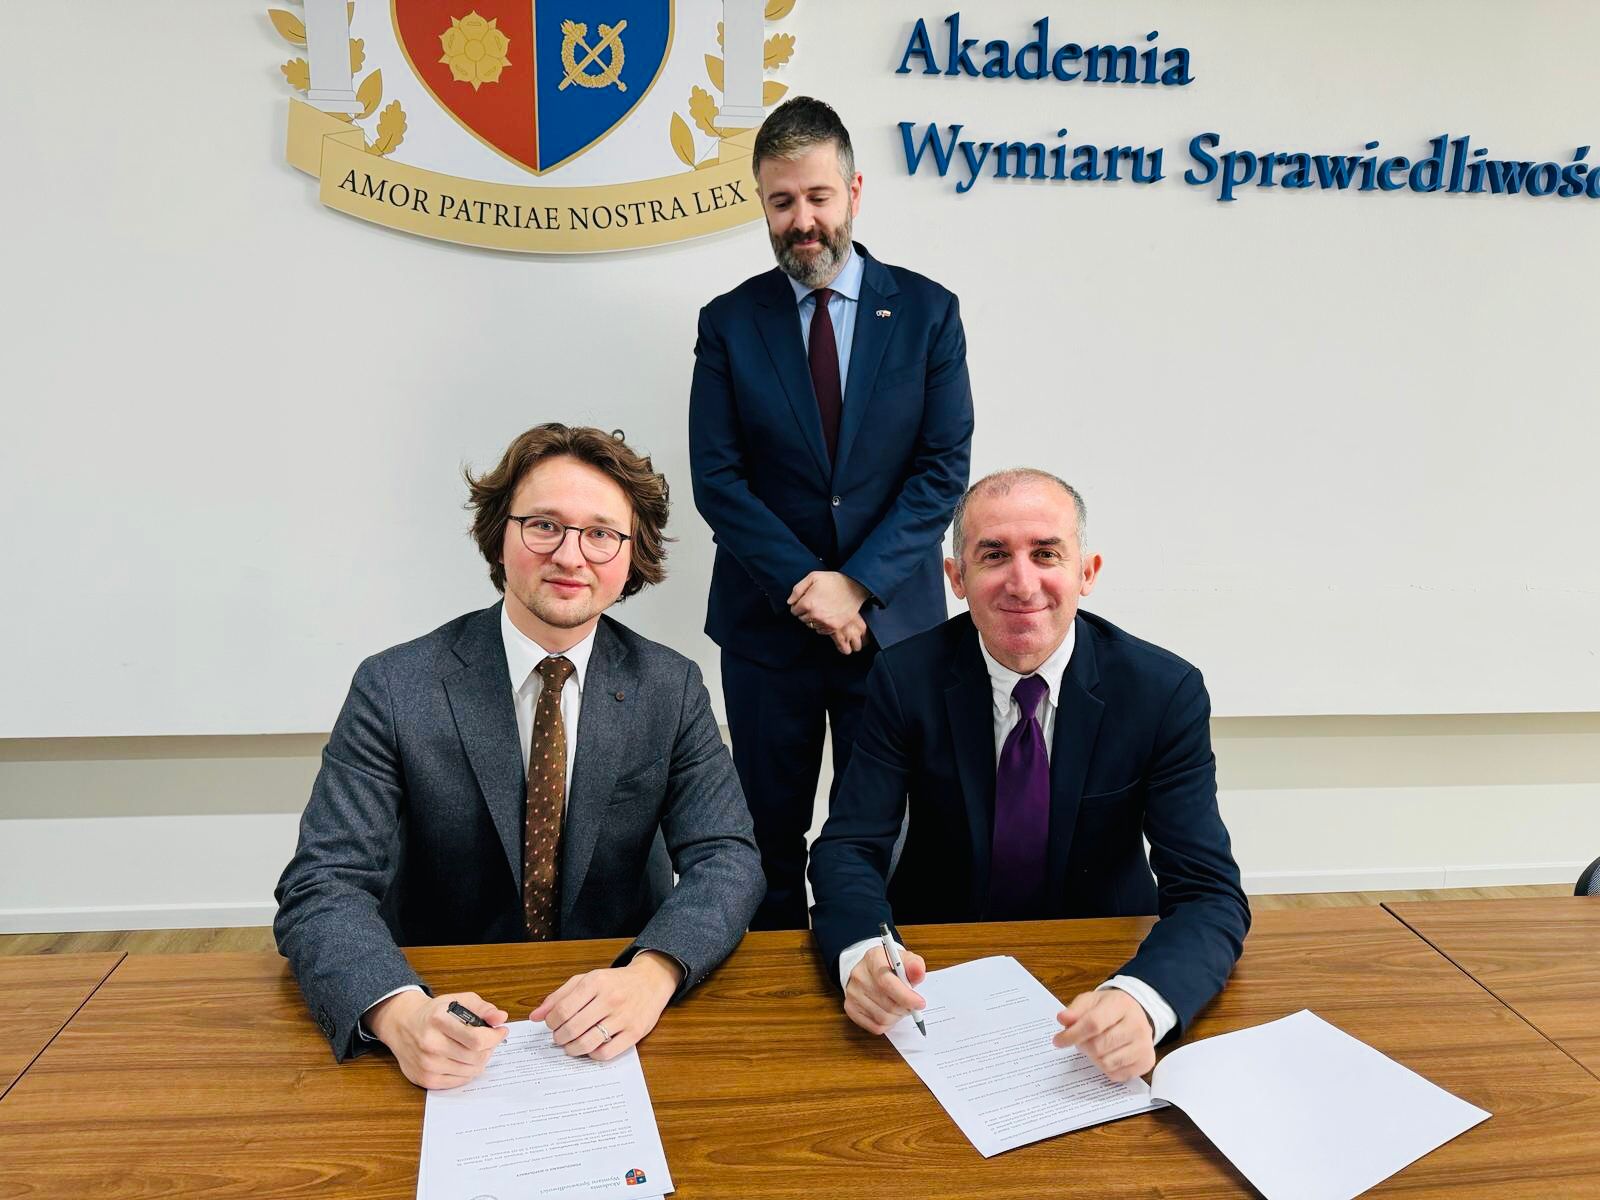 UP dhe Universiteti i Drejtësisë në Varshavë lidhin marrëveshje bashkëpunimi